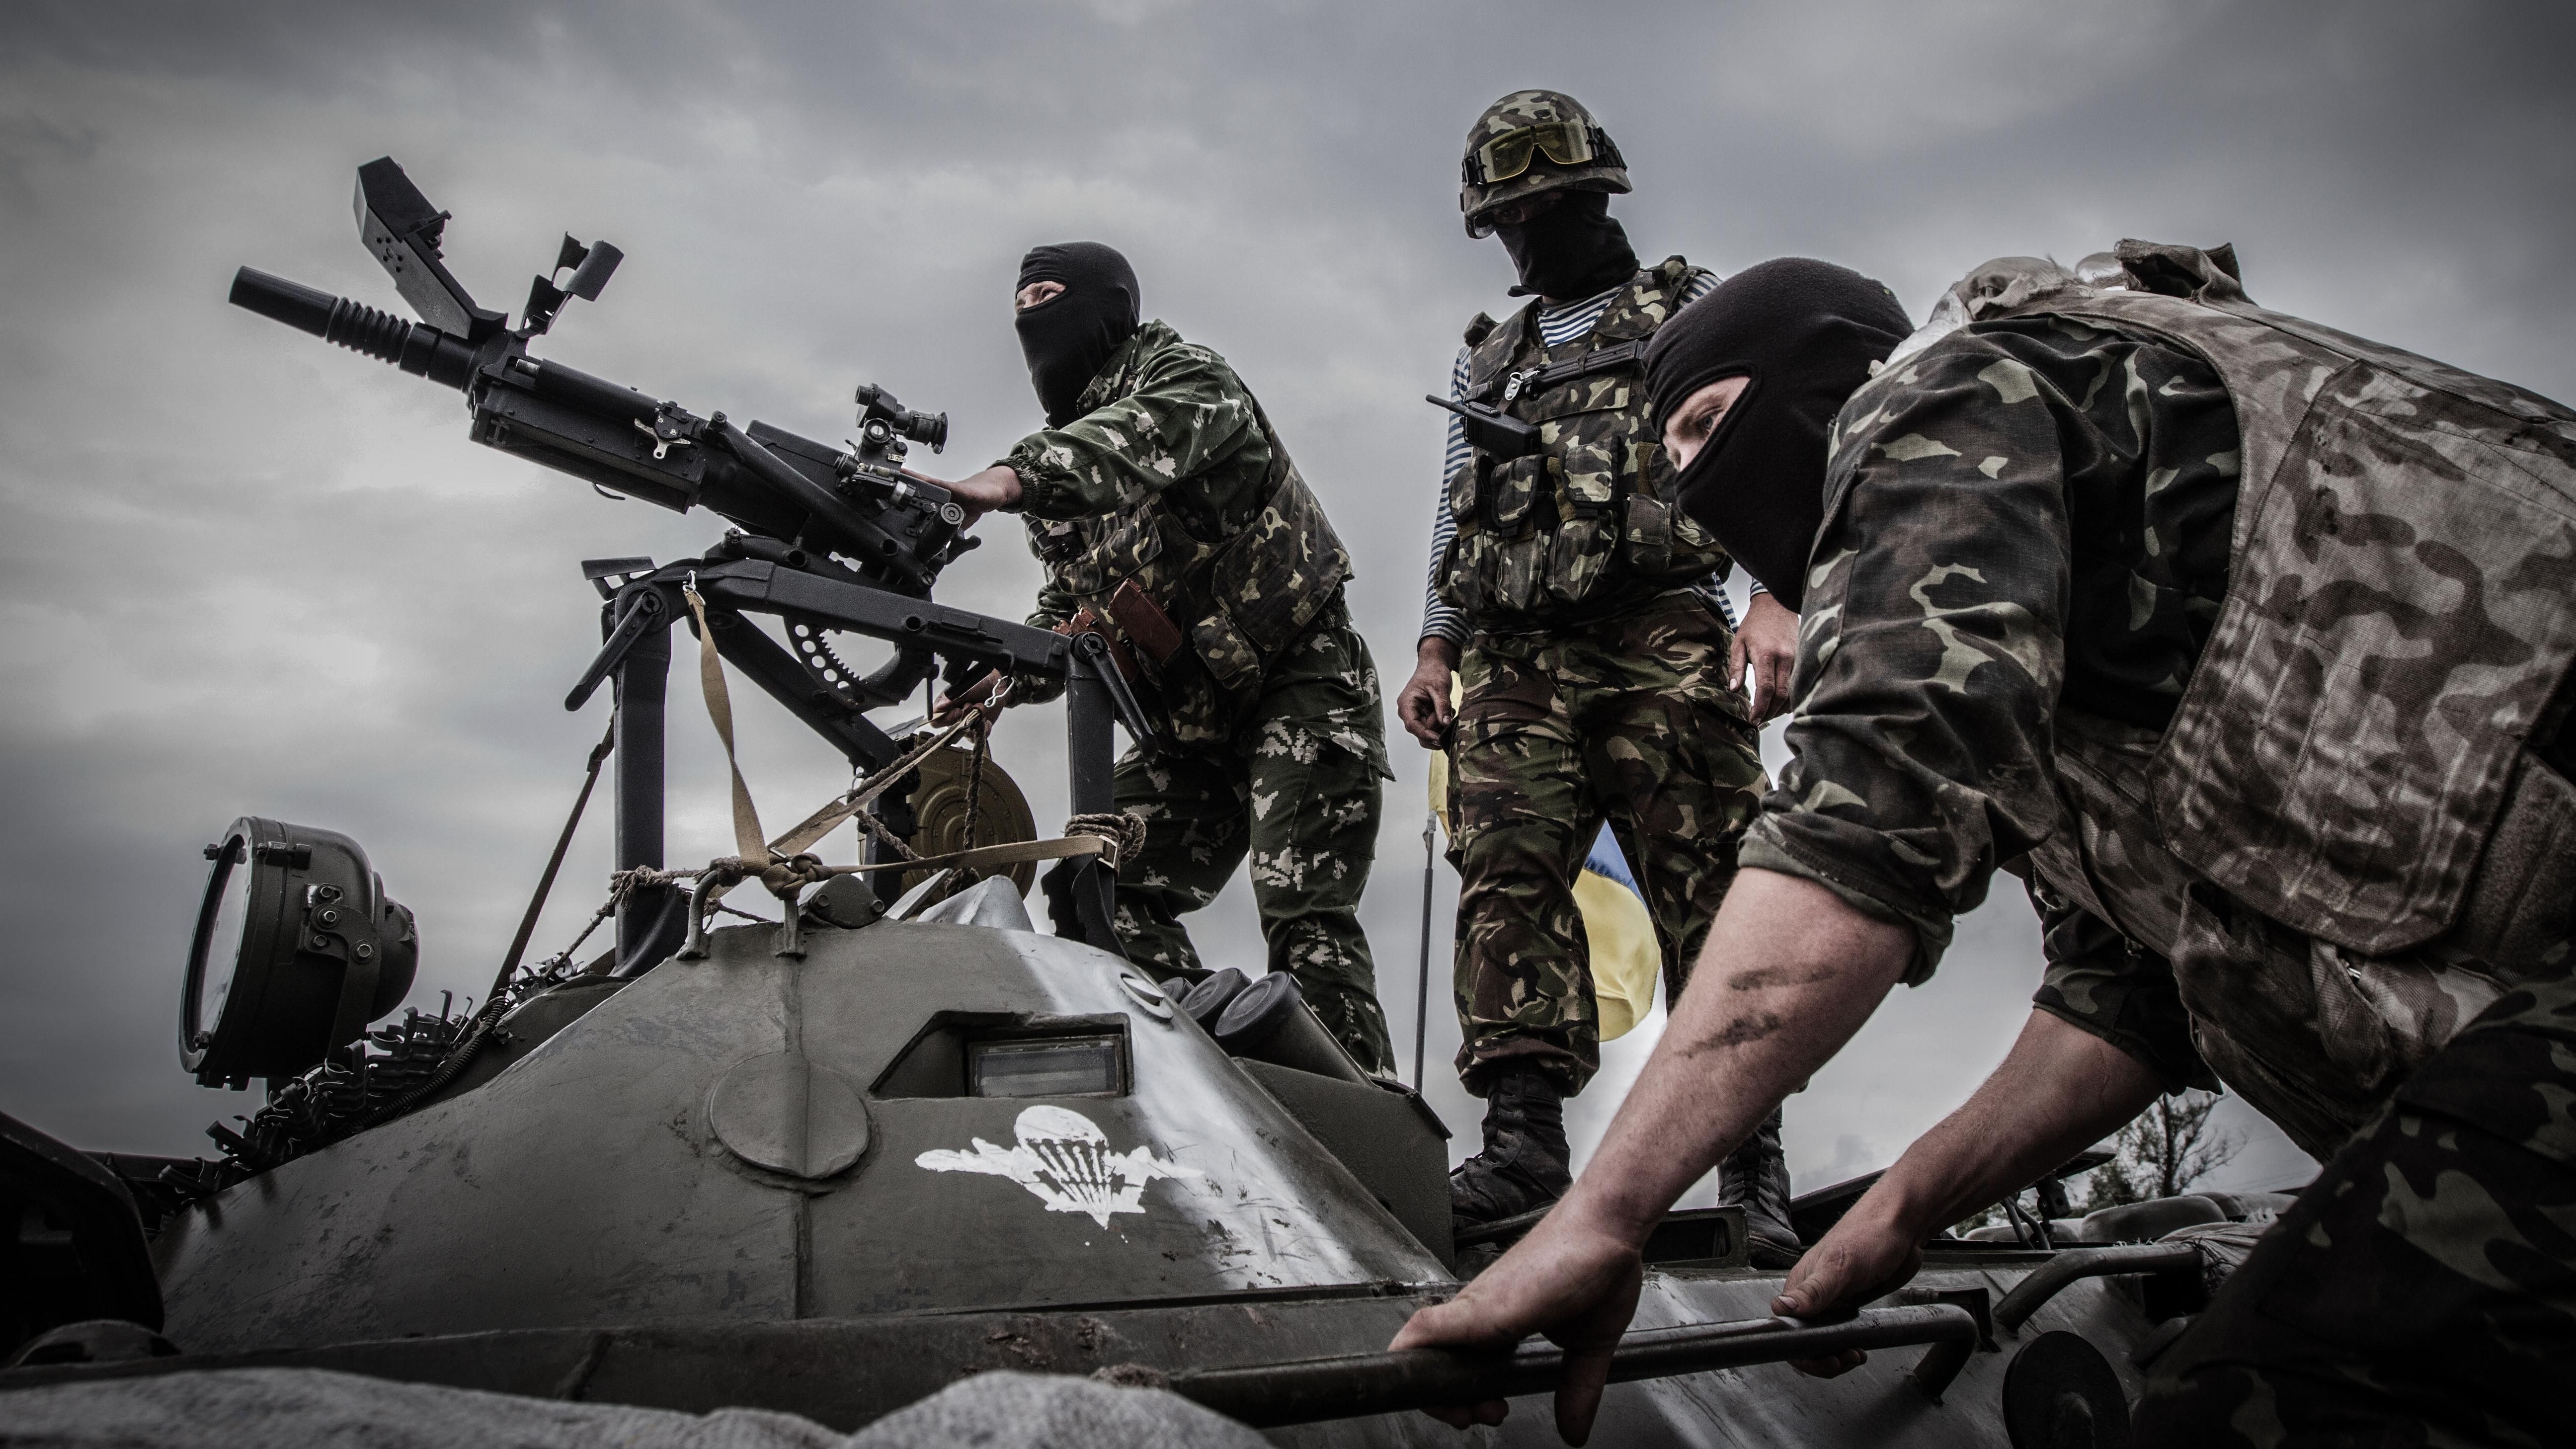 Звільнення Донецька обернеться страшною бійнею, – військовий експерт 